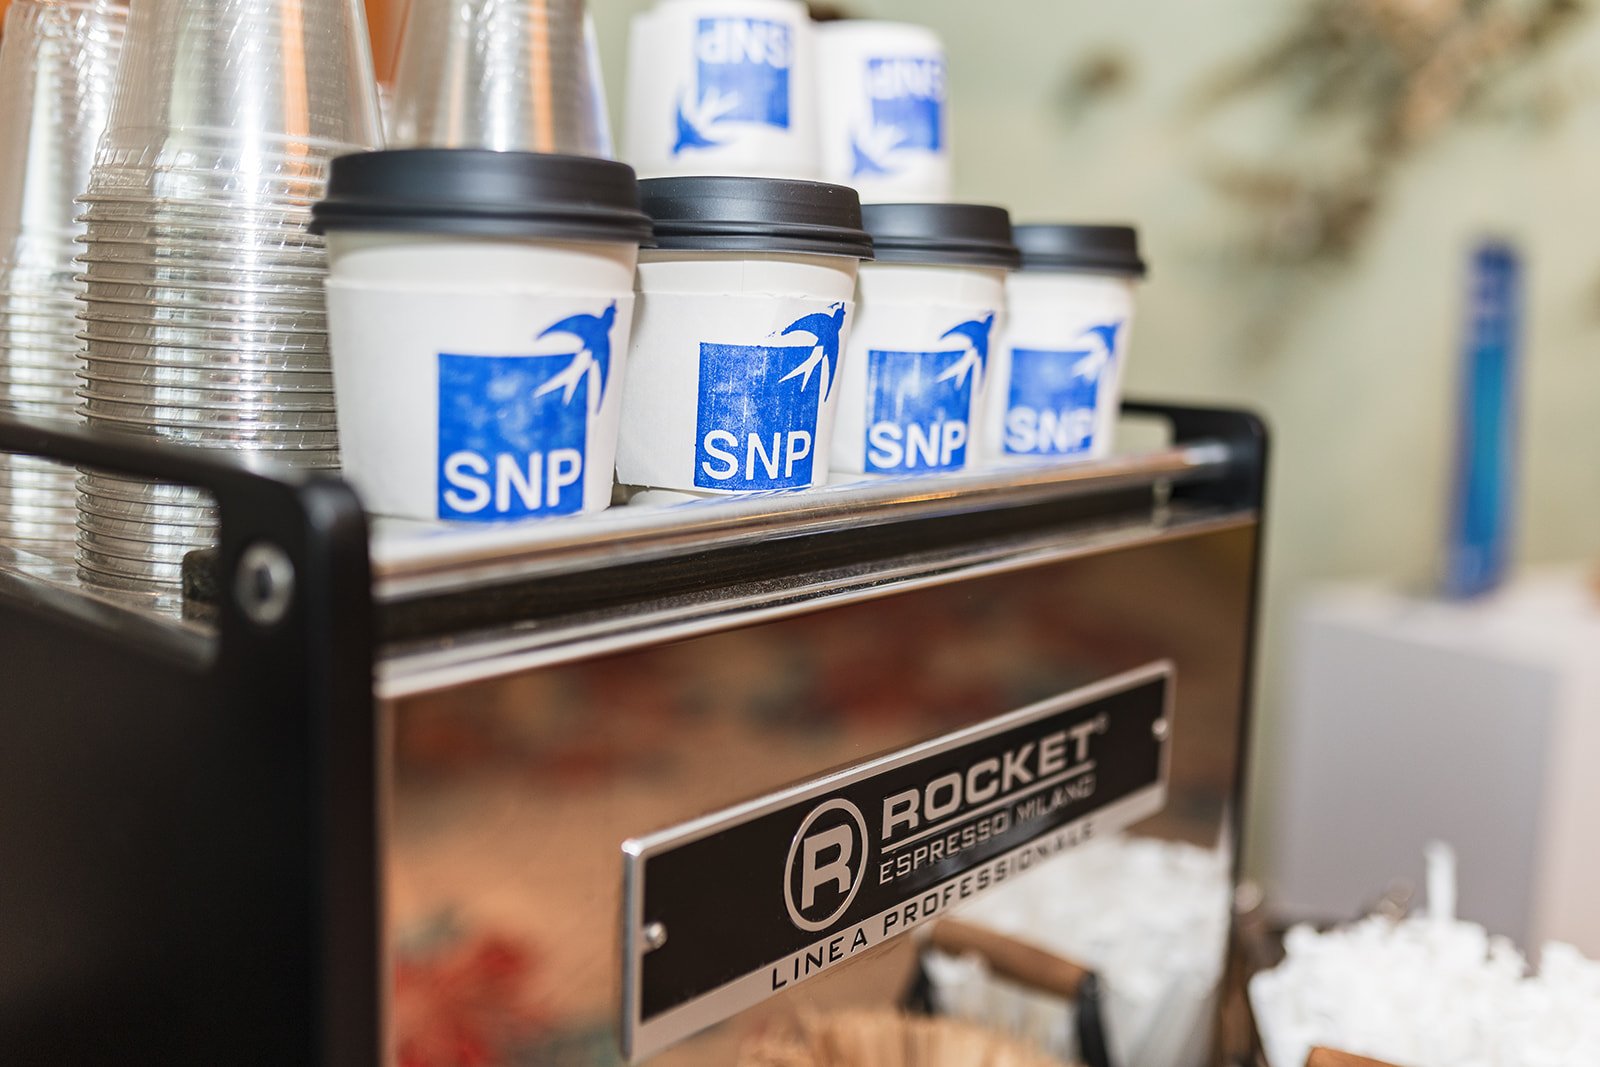 SNP-coffee-truck.jpg